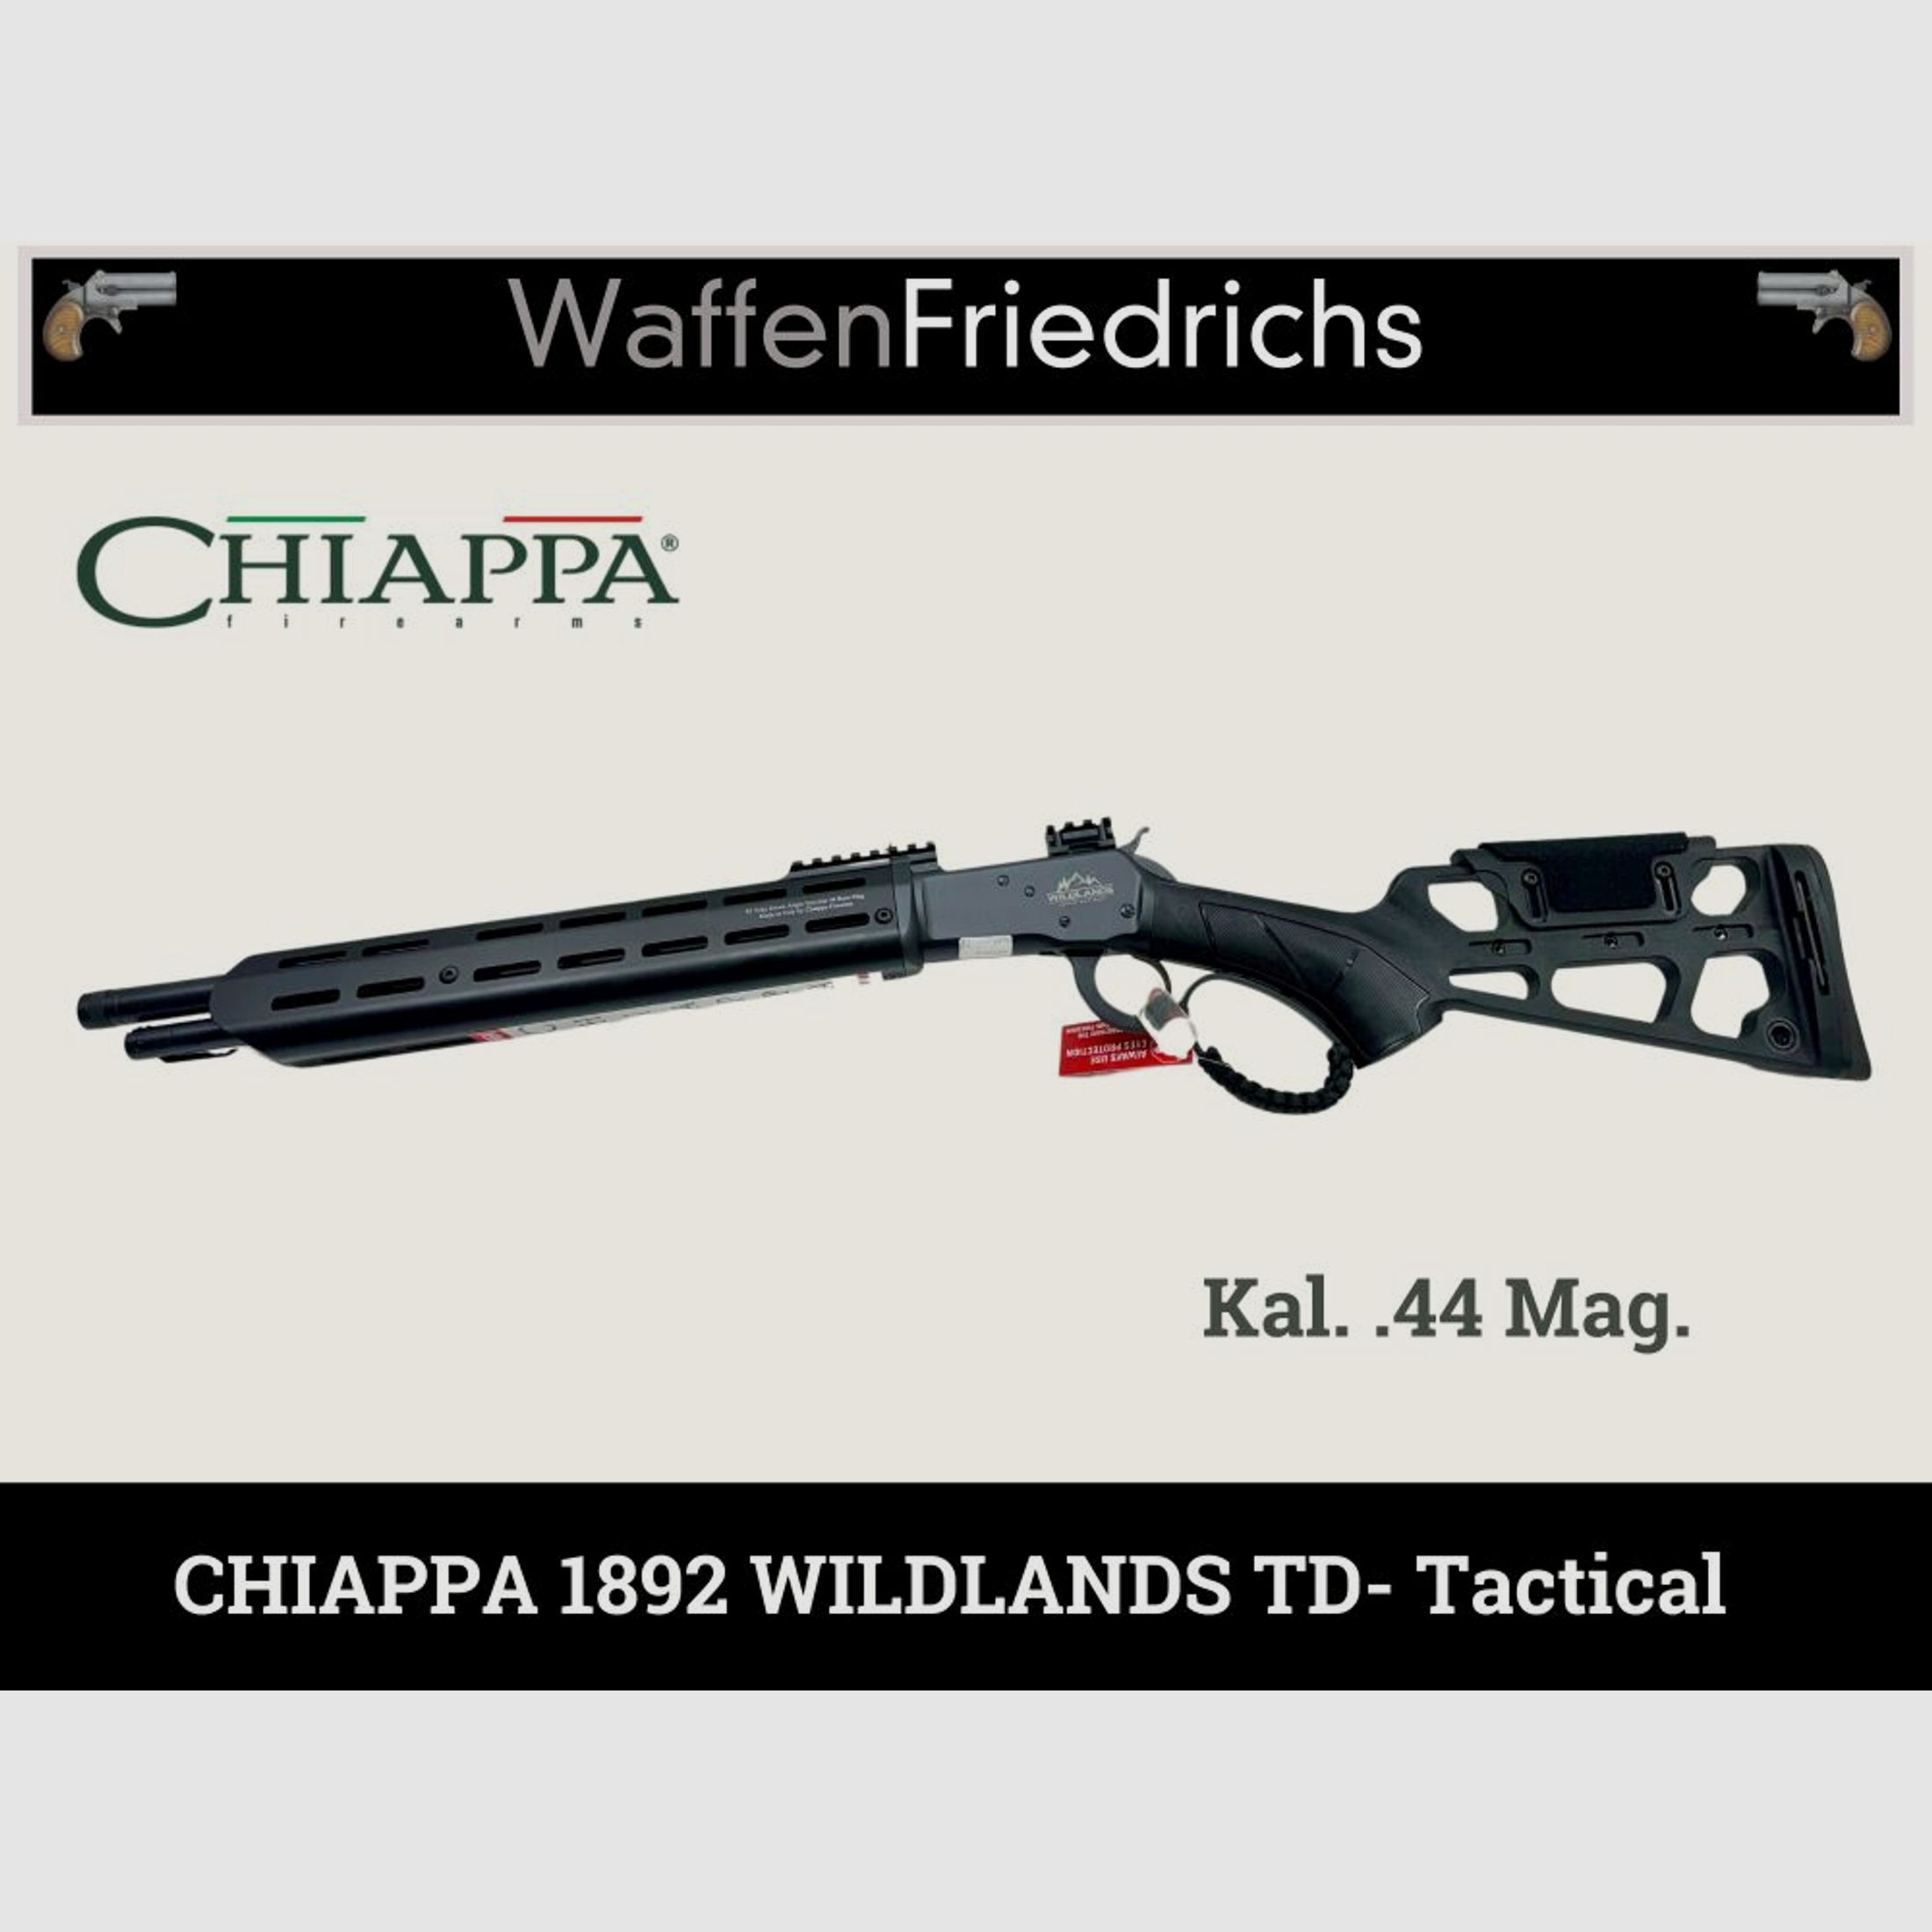 CHIAPPA	 1892 Wildlands TD TACTICAL 16" |UHR Unterhebelrepetierbüchse | Waffen Friedrichs